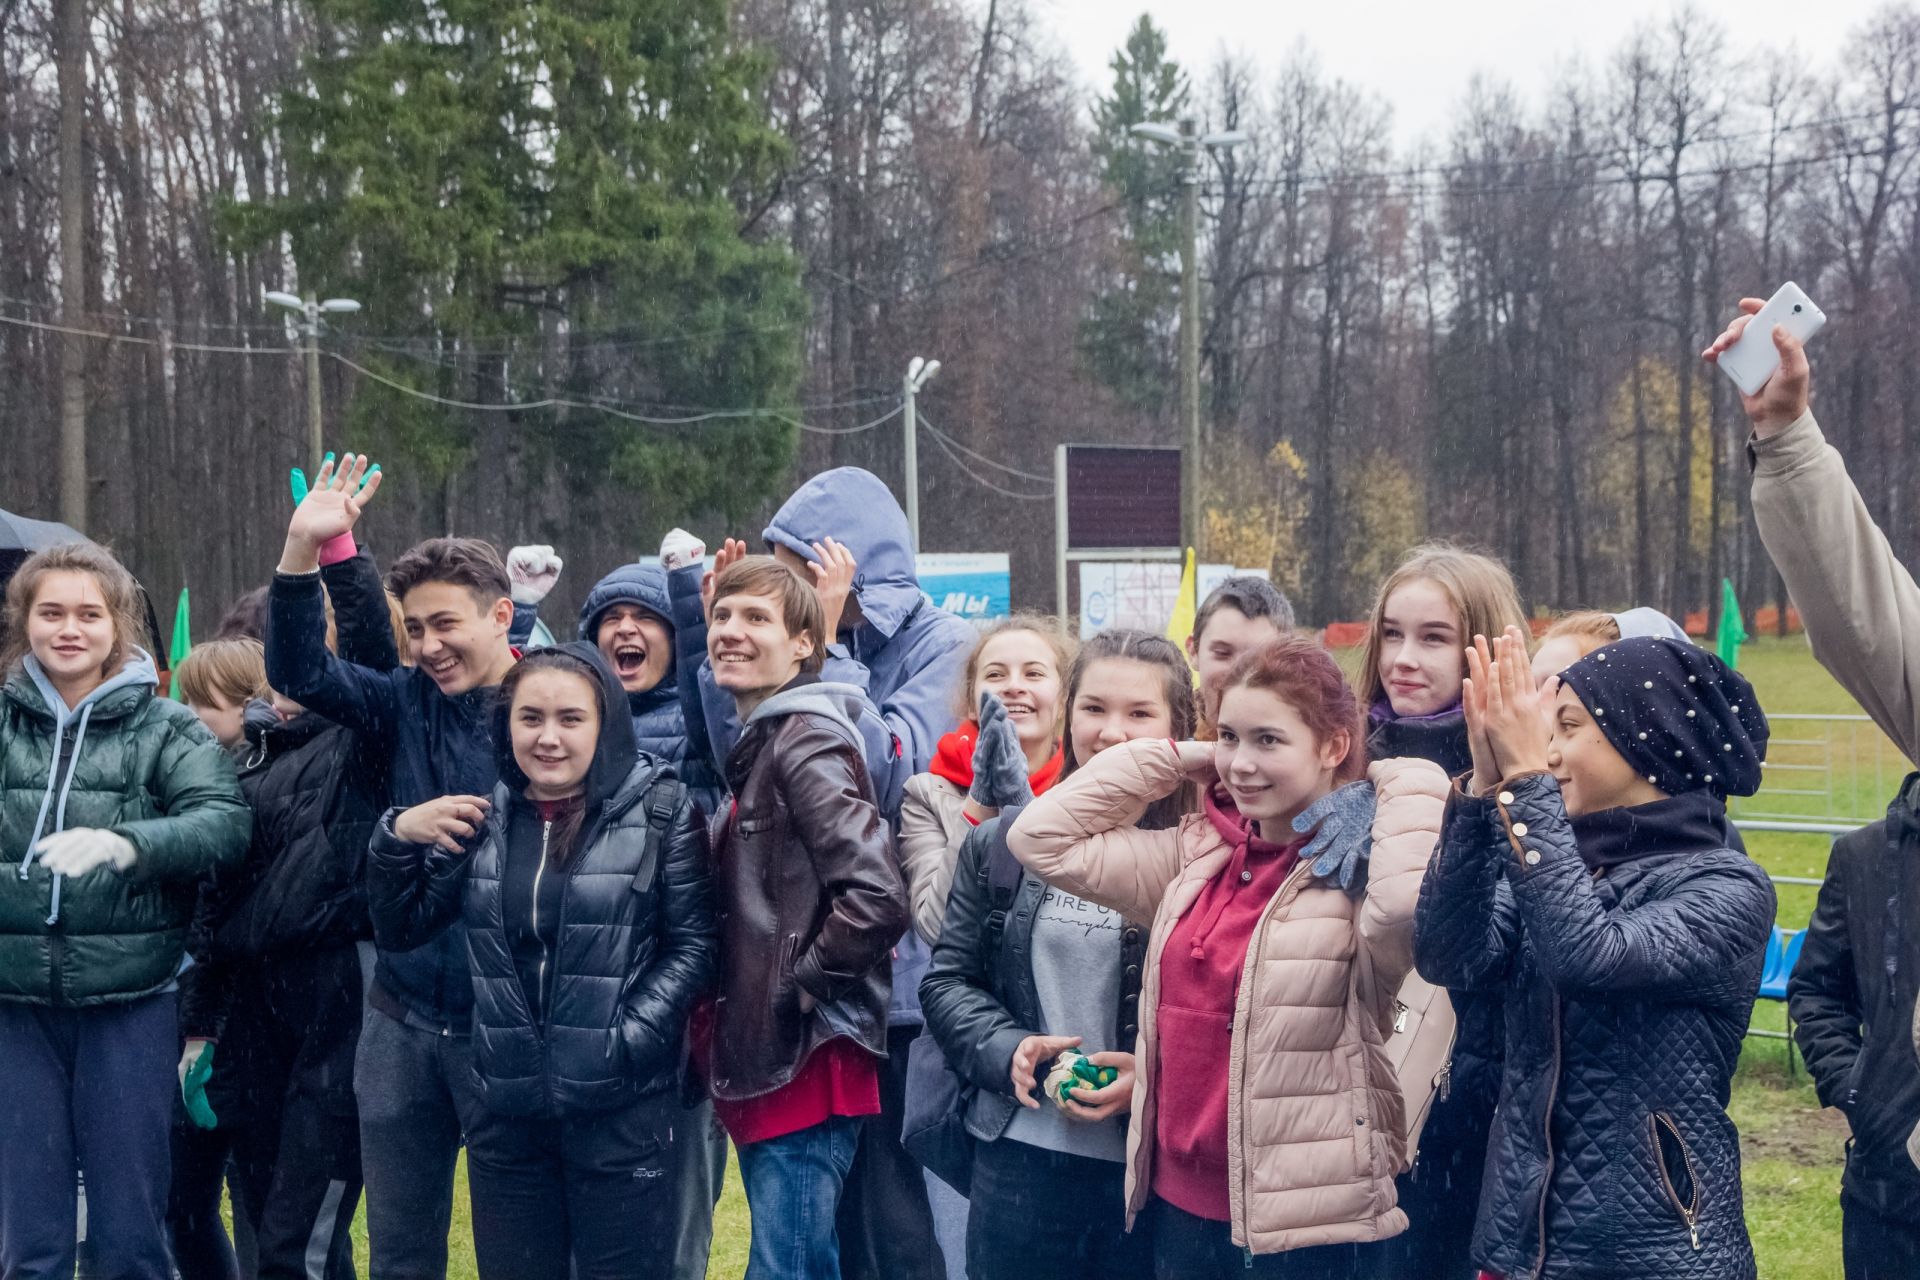 Фото: Несмотря на дождь, соревнования среди первокурсников КАИ прошли весело и задорно